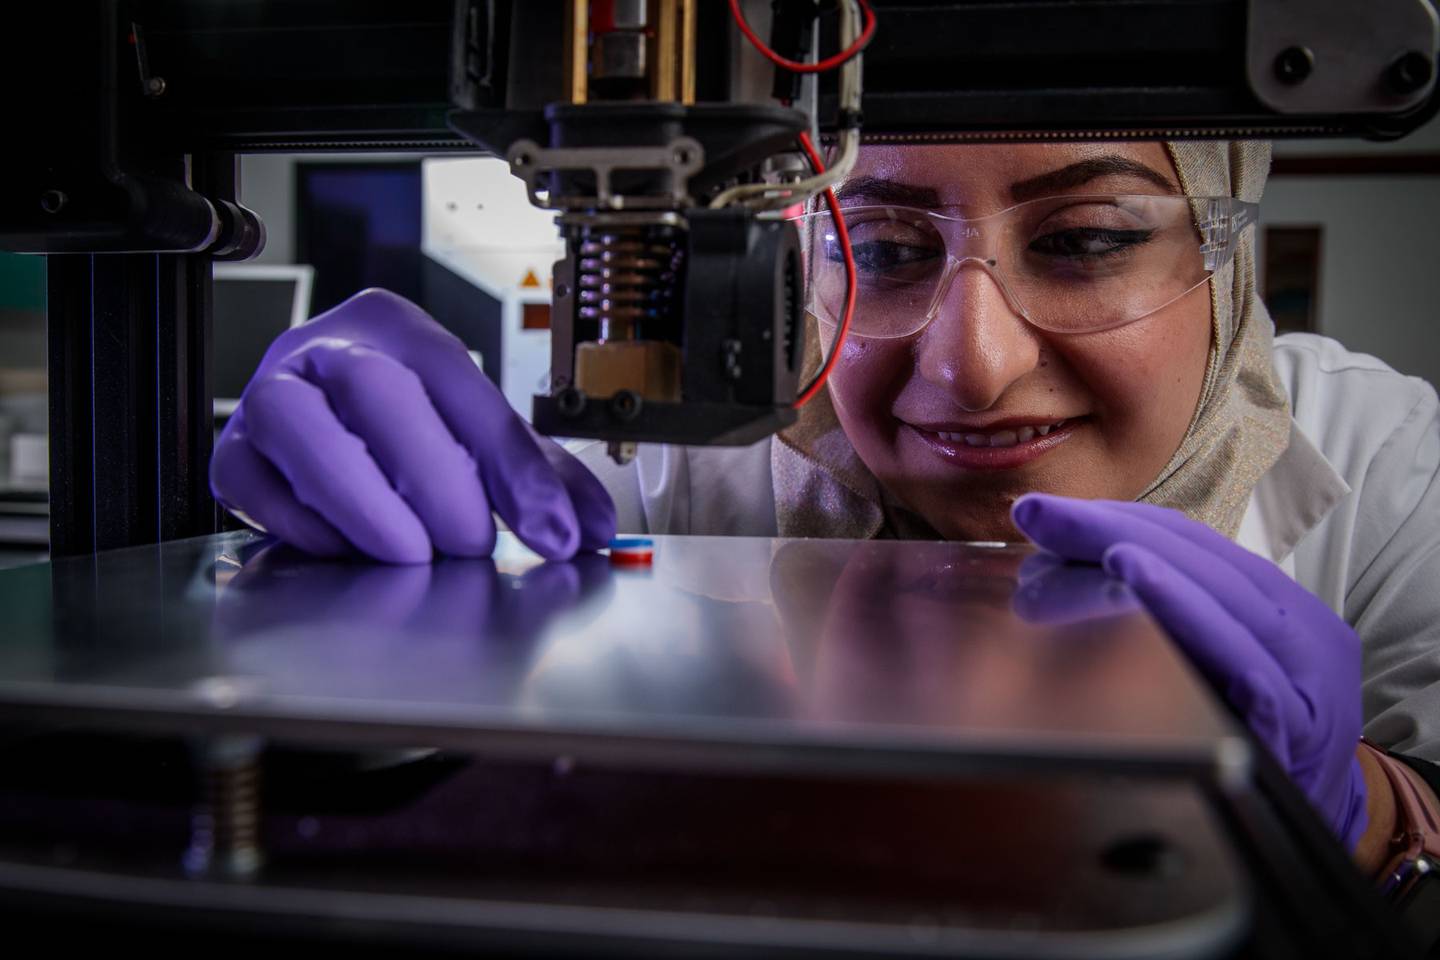 Dr. Awads bahnbrechende Forschung ebnet den Weg für personalisierte Medikamente, die zu Hause in 3D gedruckt werden können.  Foto: Dr. Atheer Awad